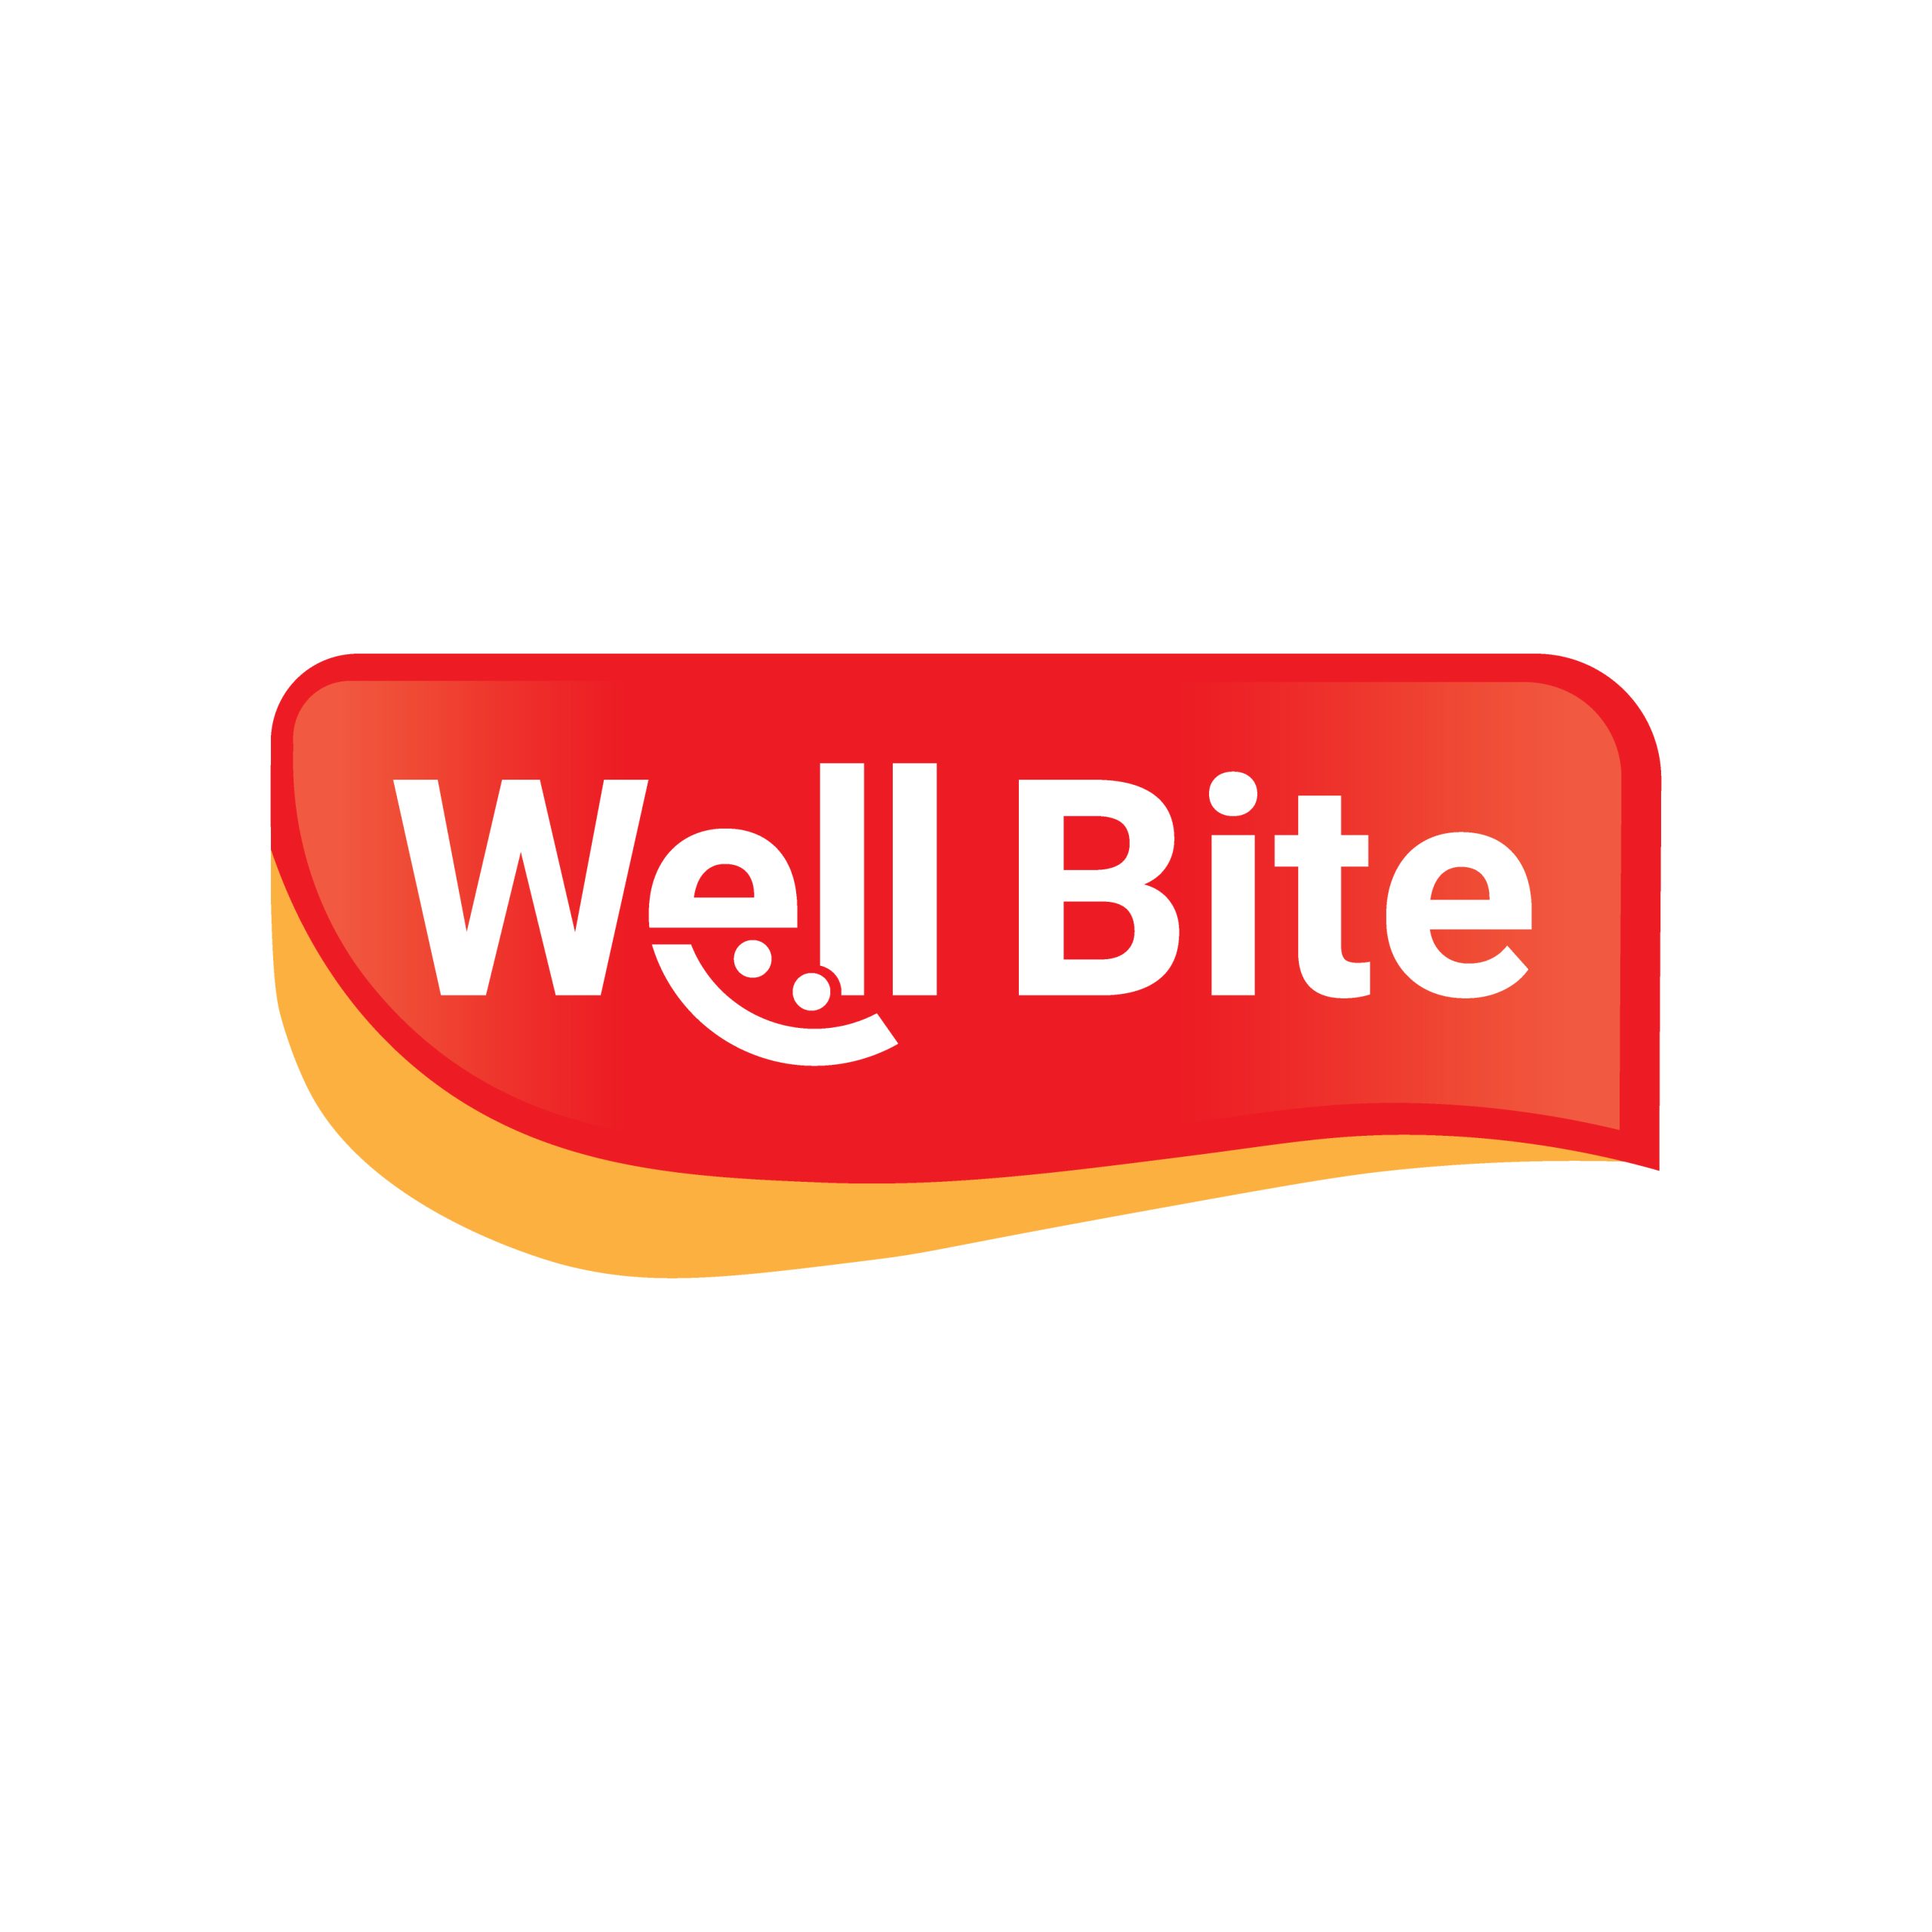 Well Bite logo